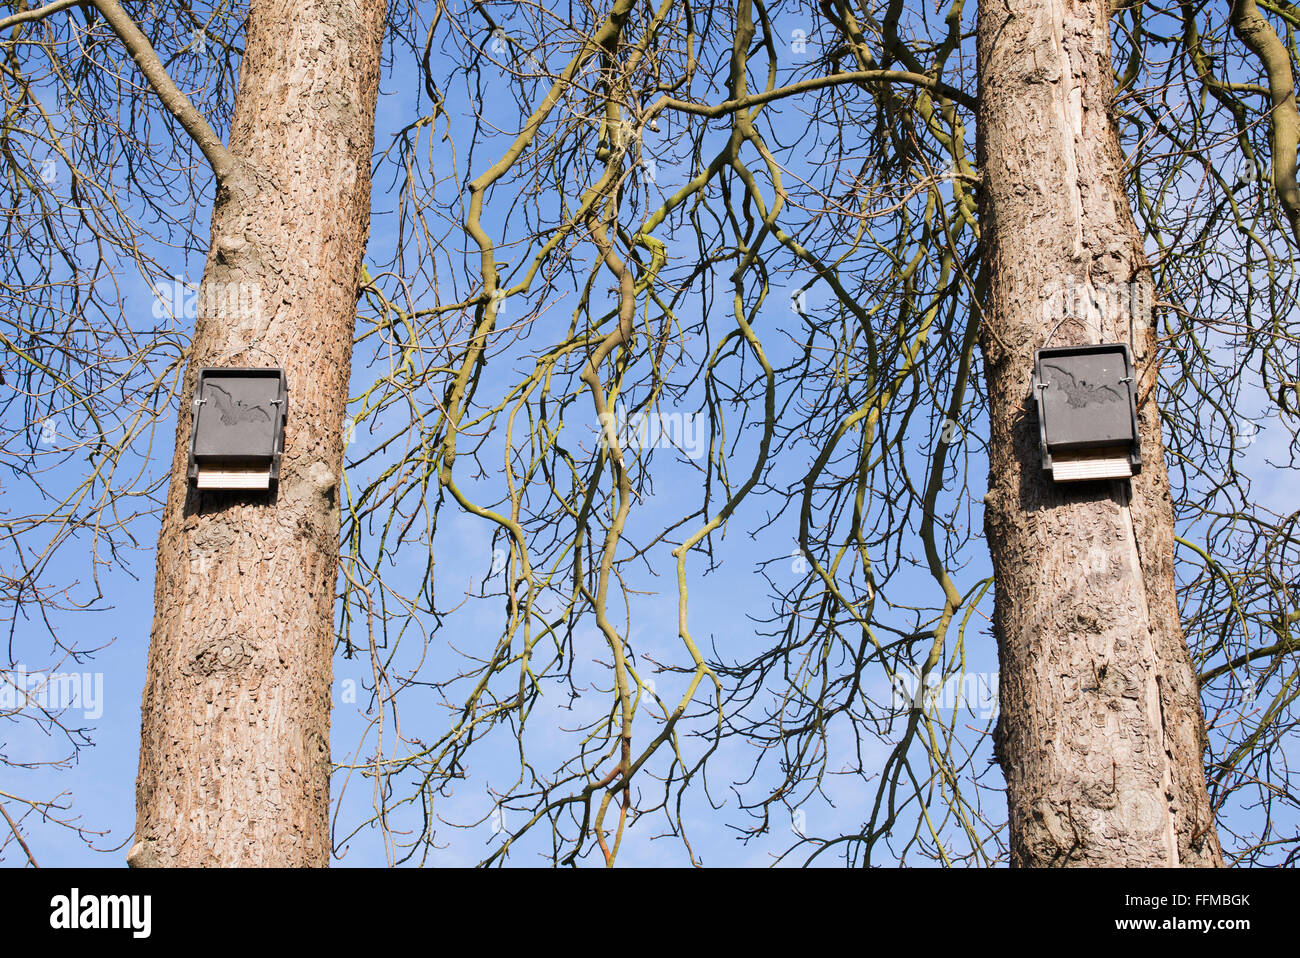 Bat boxes on winter trees. UK Stock Photo